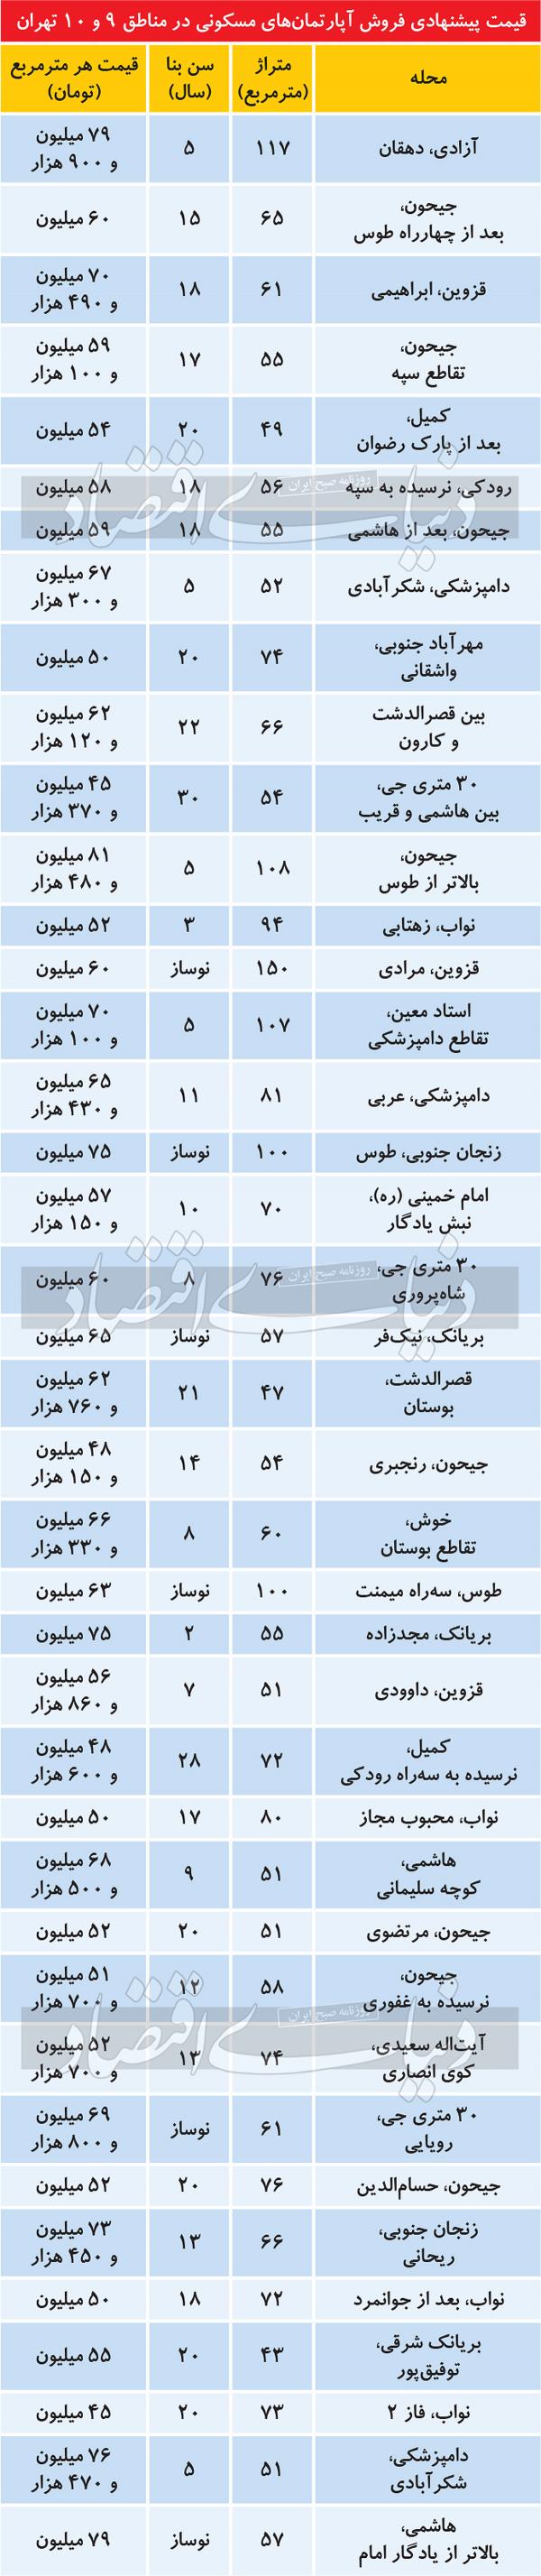 قیمت مسکن,آخرین تغییرات قیمت مسکن در مناطق ۹ و ۱۰ تهران